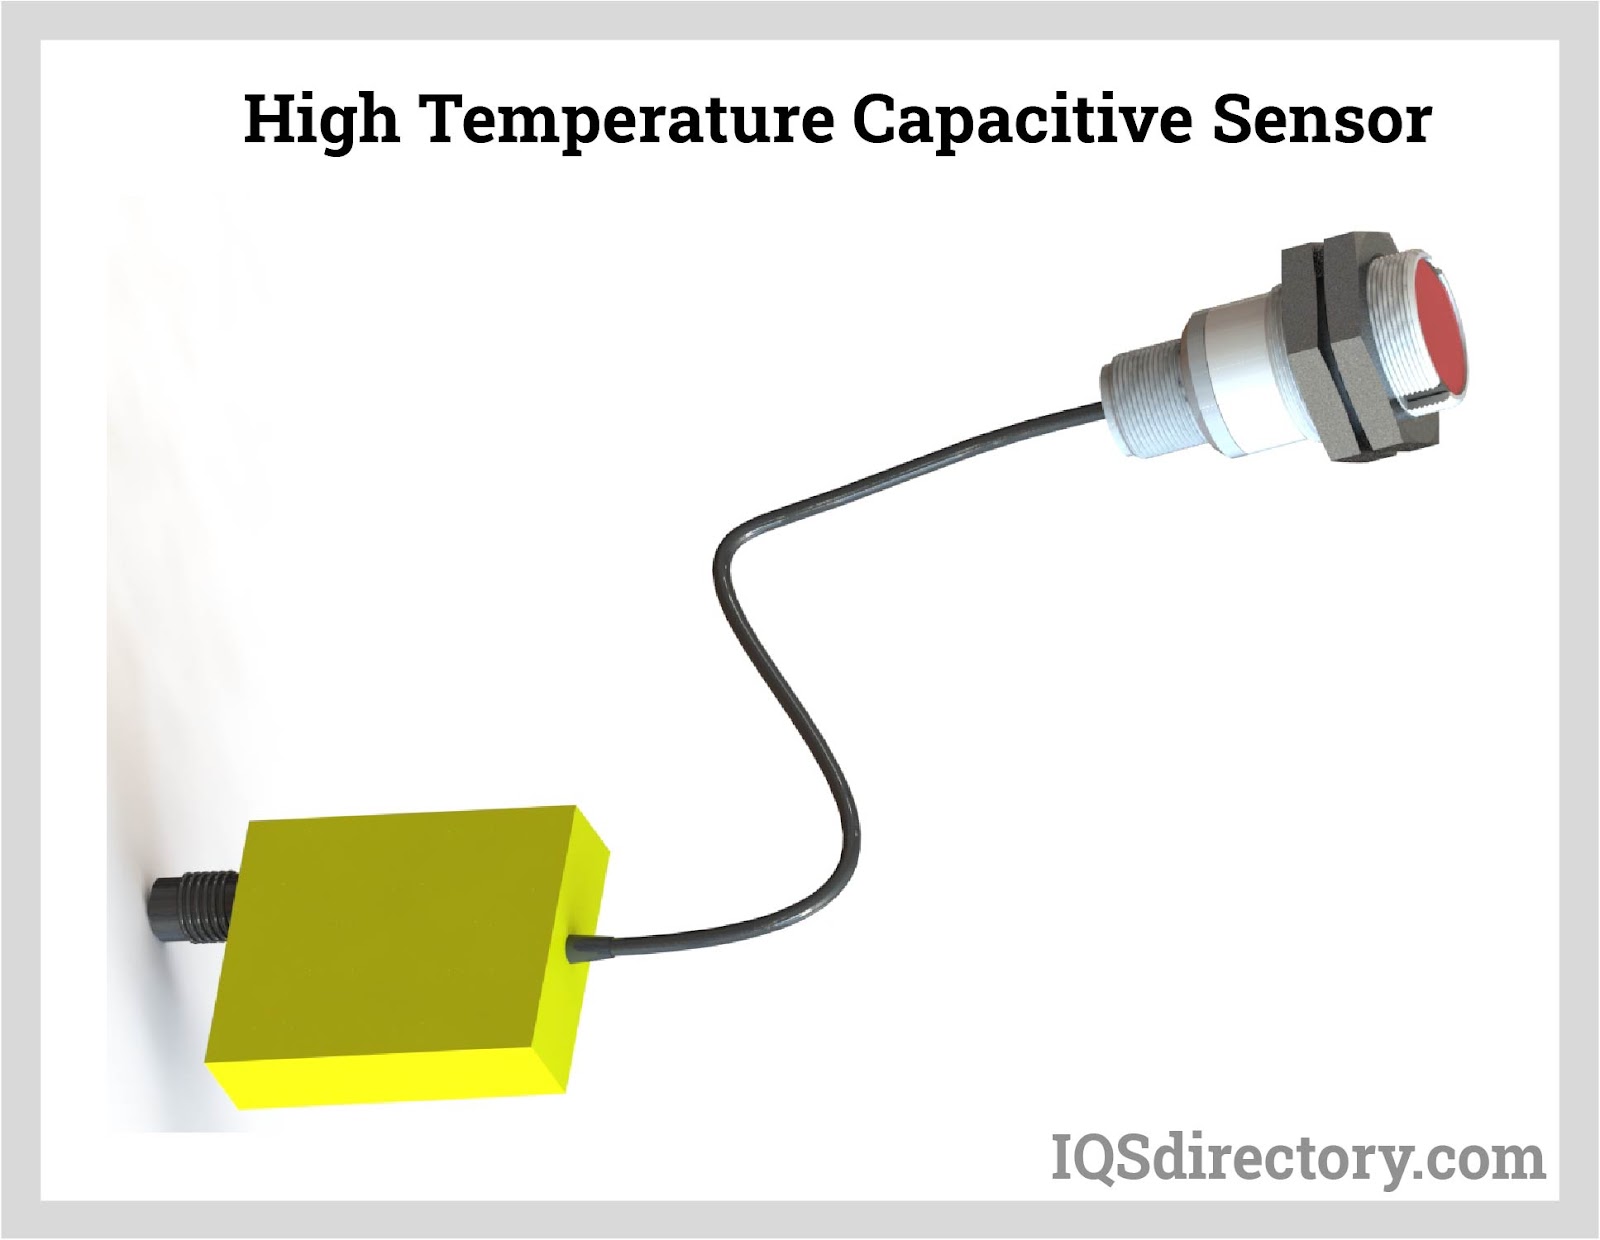 High Temperature Capacitive Sensor